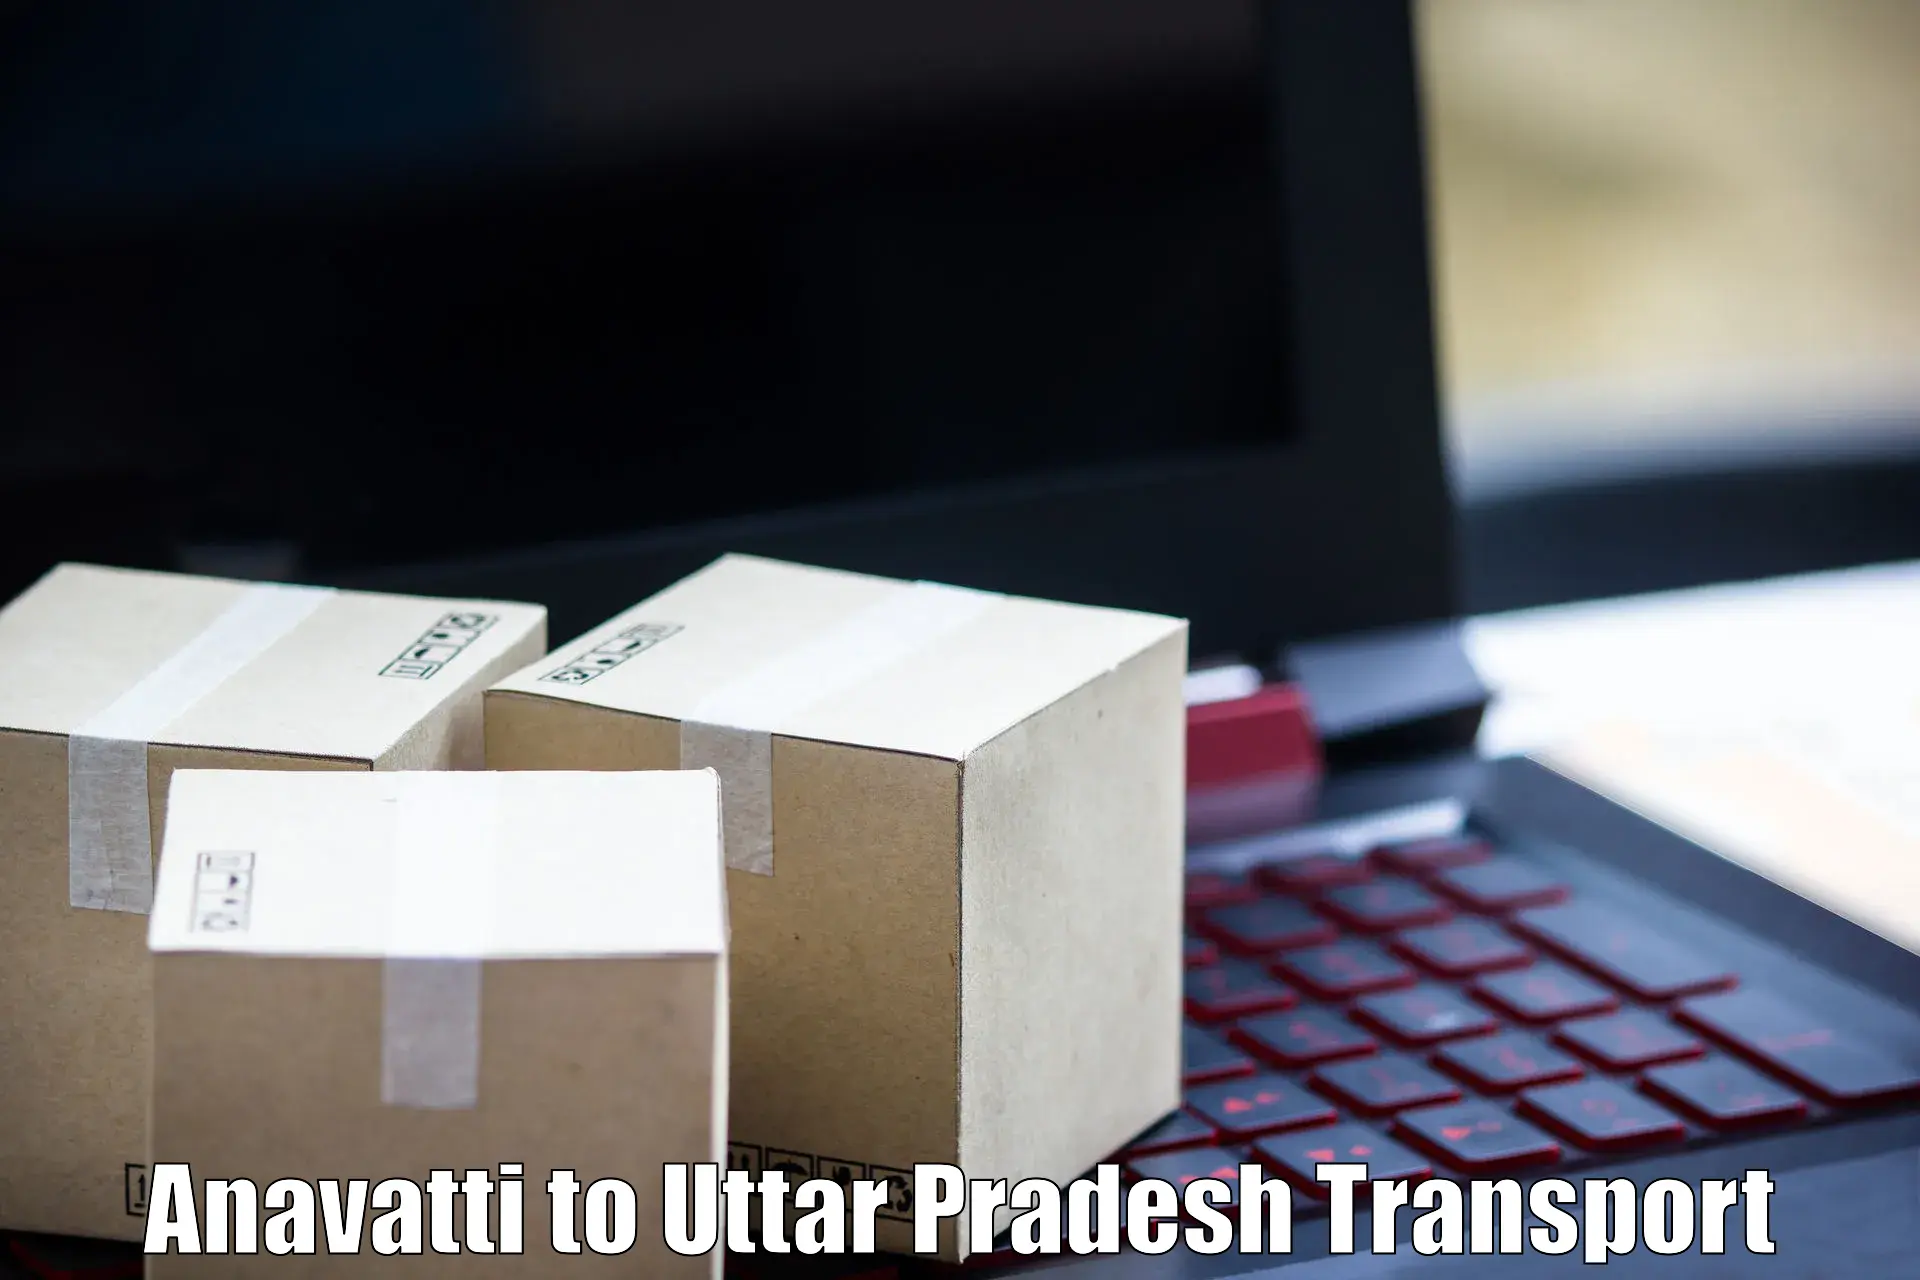 Air freight transport services in Anavatti to Uttar Pradesh